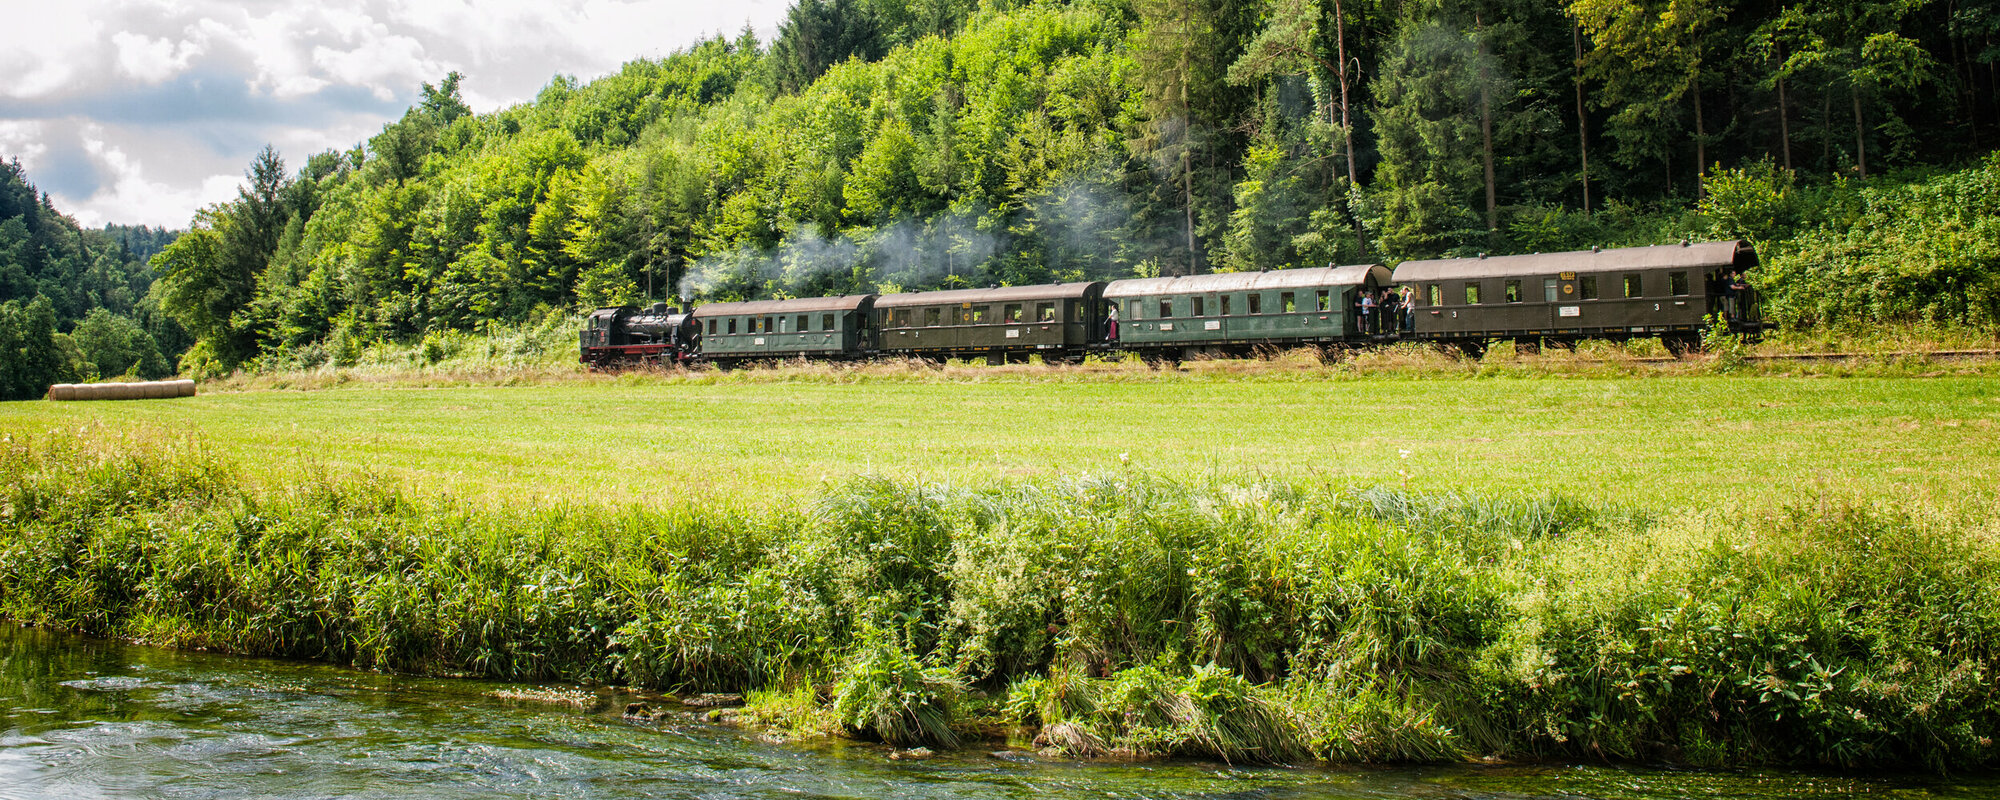 Eine alte, dampfende Eisenbahn mit vier Waggons fährt vor einem Wald. Im Vordergrund ist ein Fluss zu sehen.